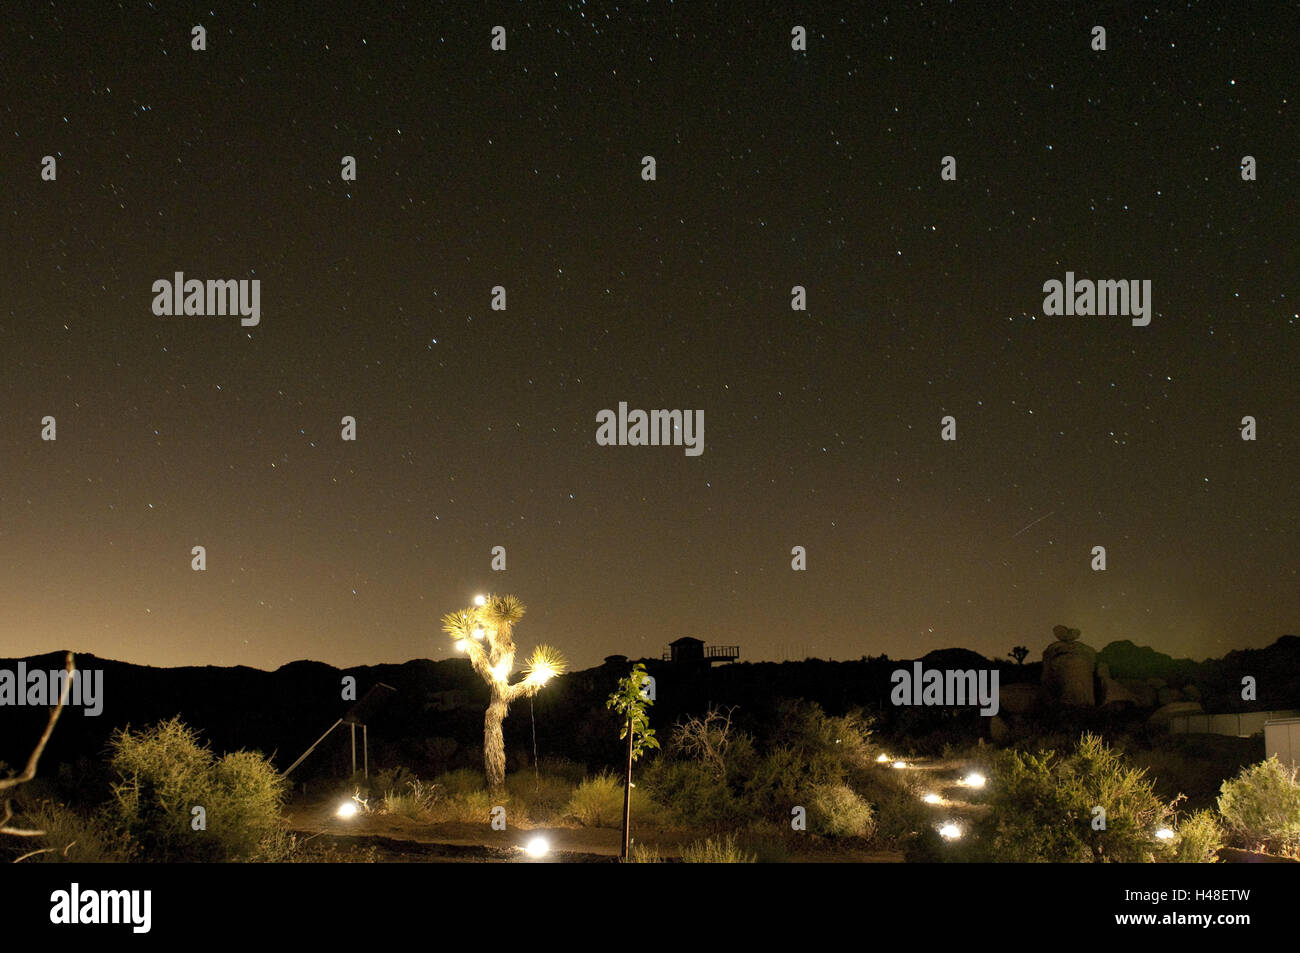 USA, California, desert, night, Stock Photo